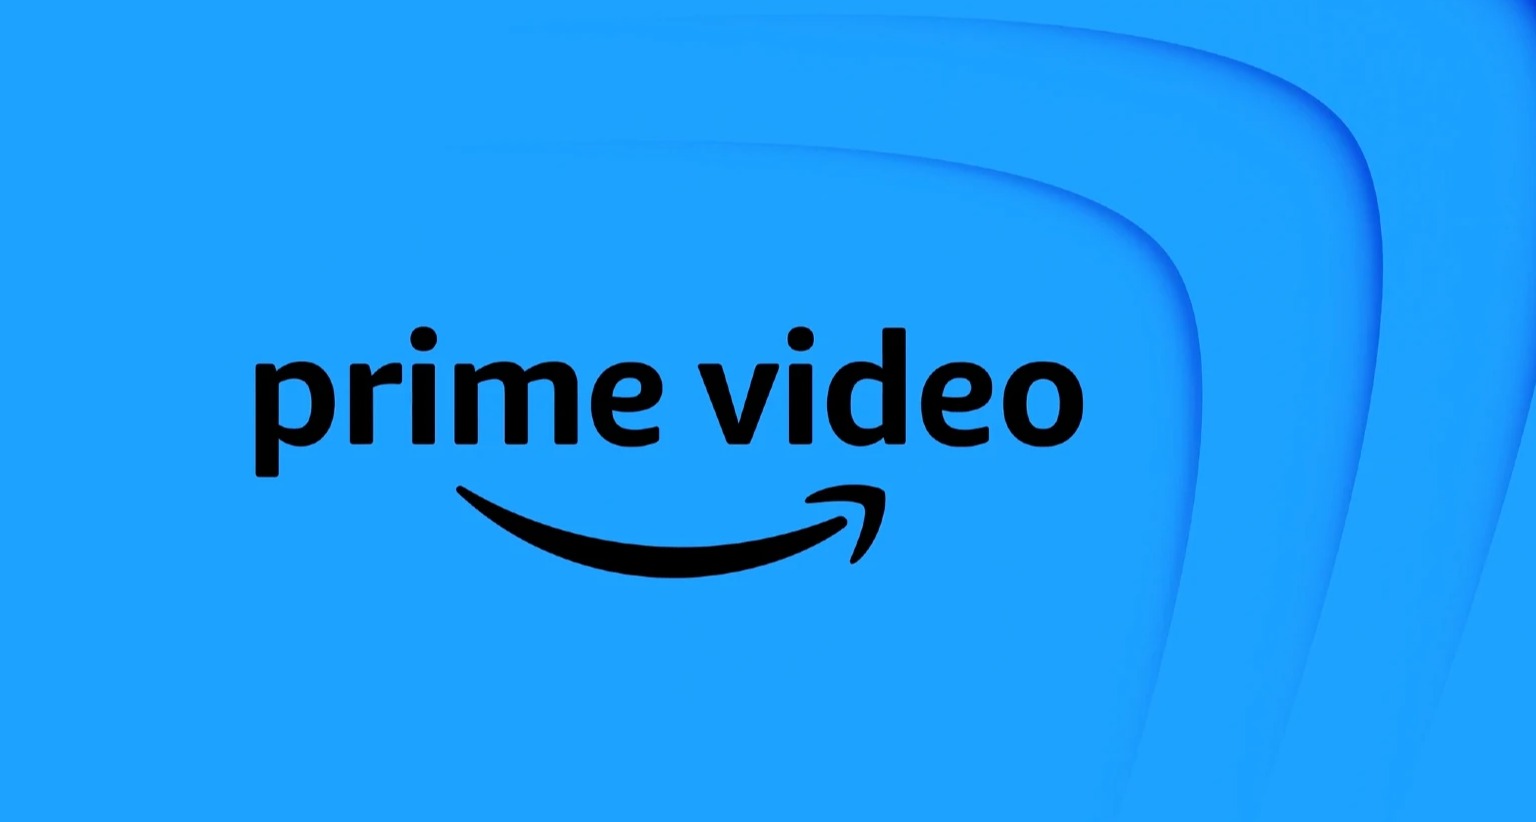 El “hoyuelo” de la sonrisa de Amazon como eje de la actualización de la identidad de marca de Prime Video